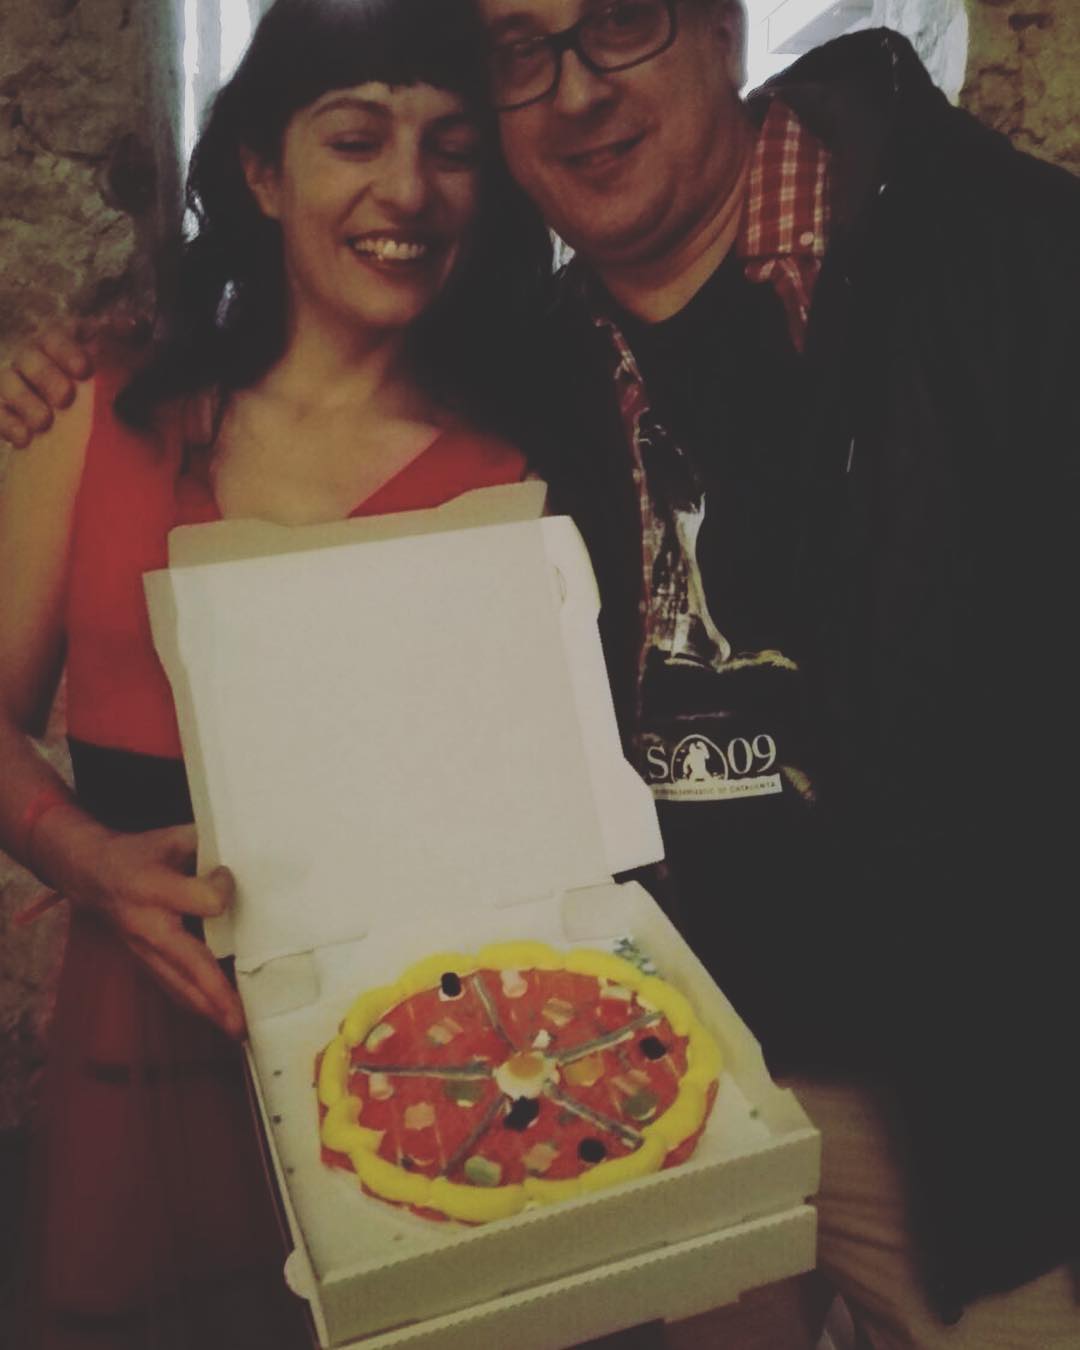 El #souvenir de #topvodafoneone ha sido una pizza de chuches :))